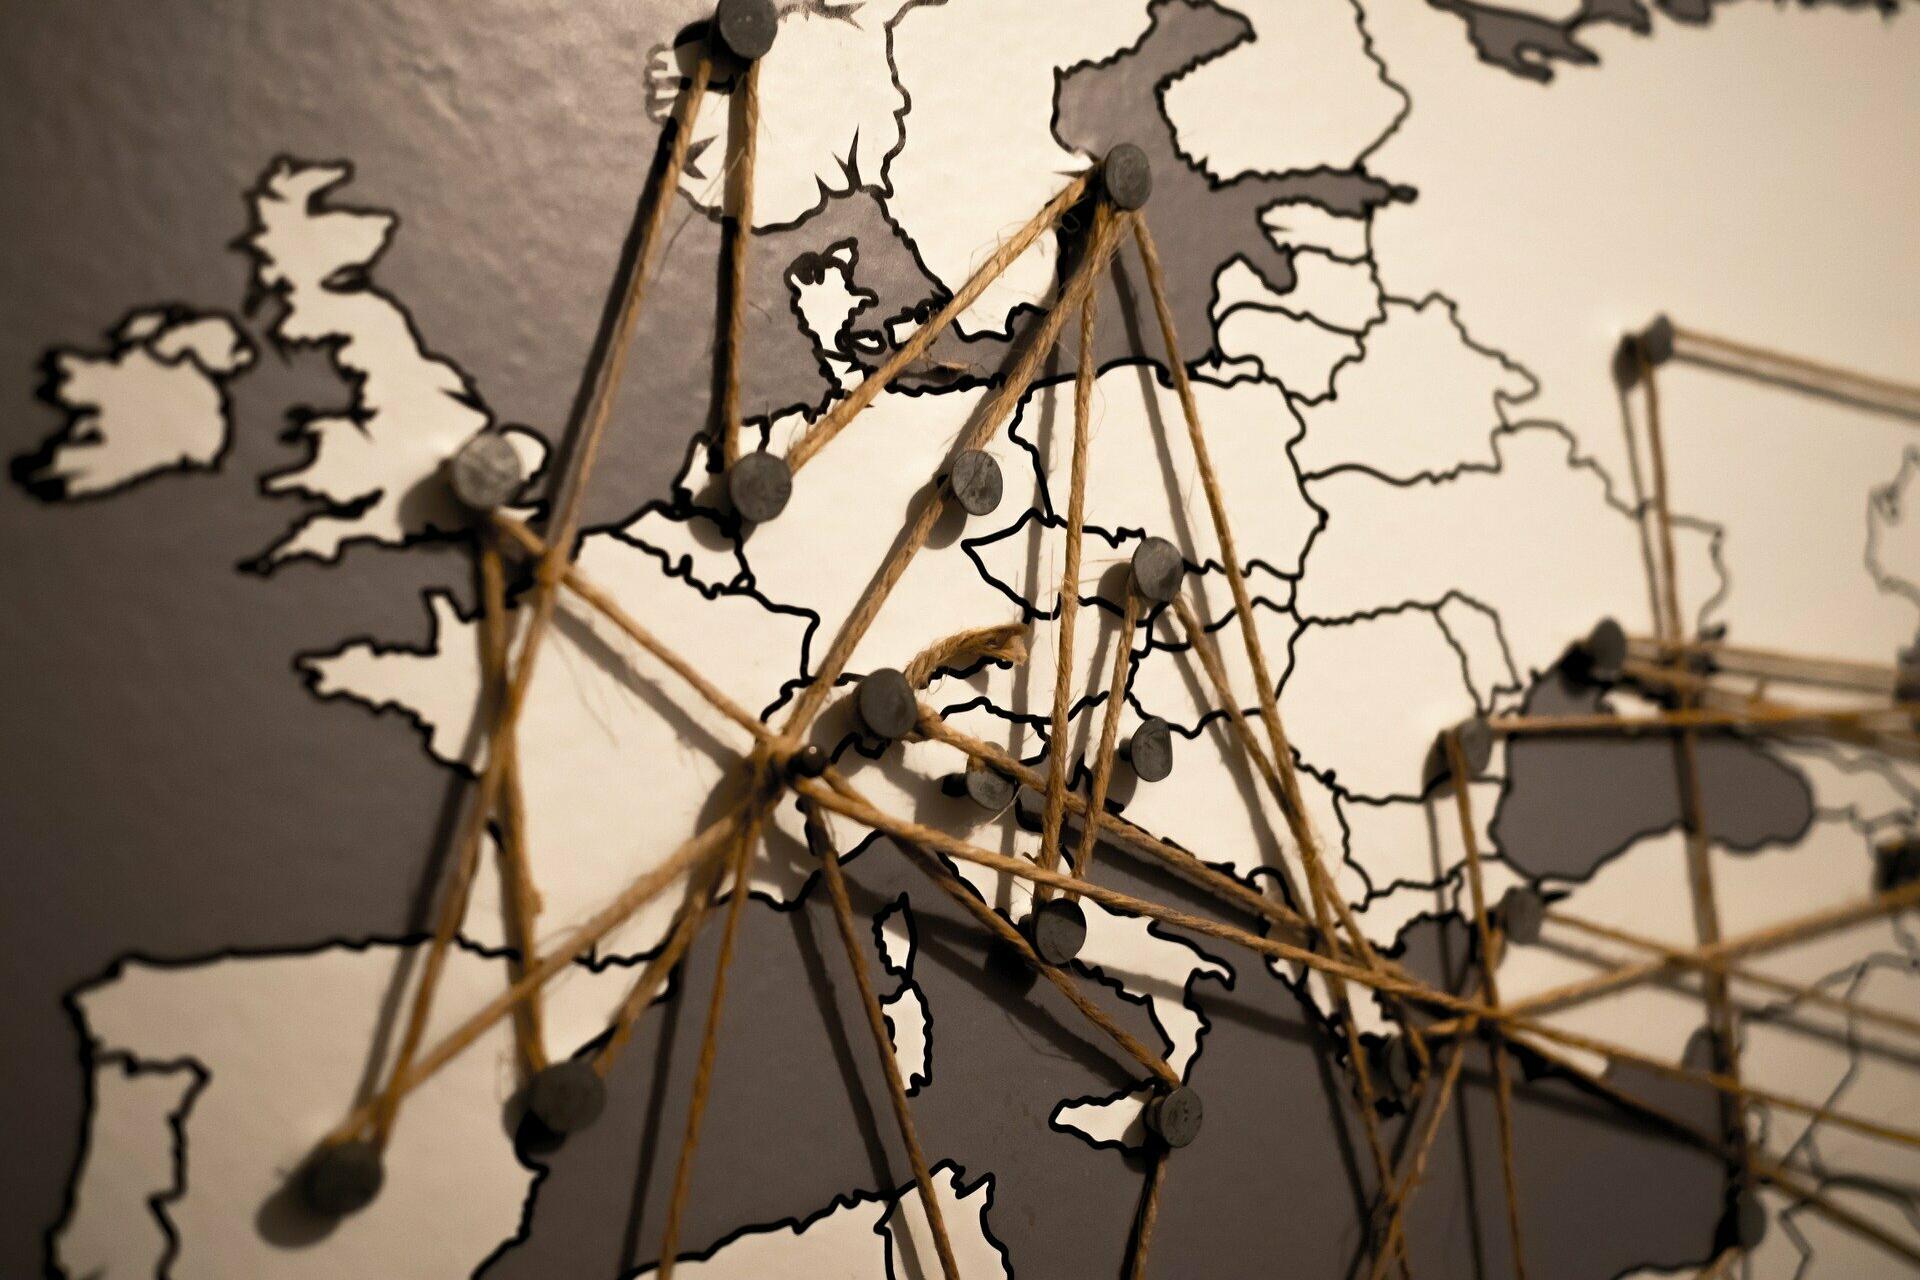 Europa-Karte in schwarz-weiß.